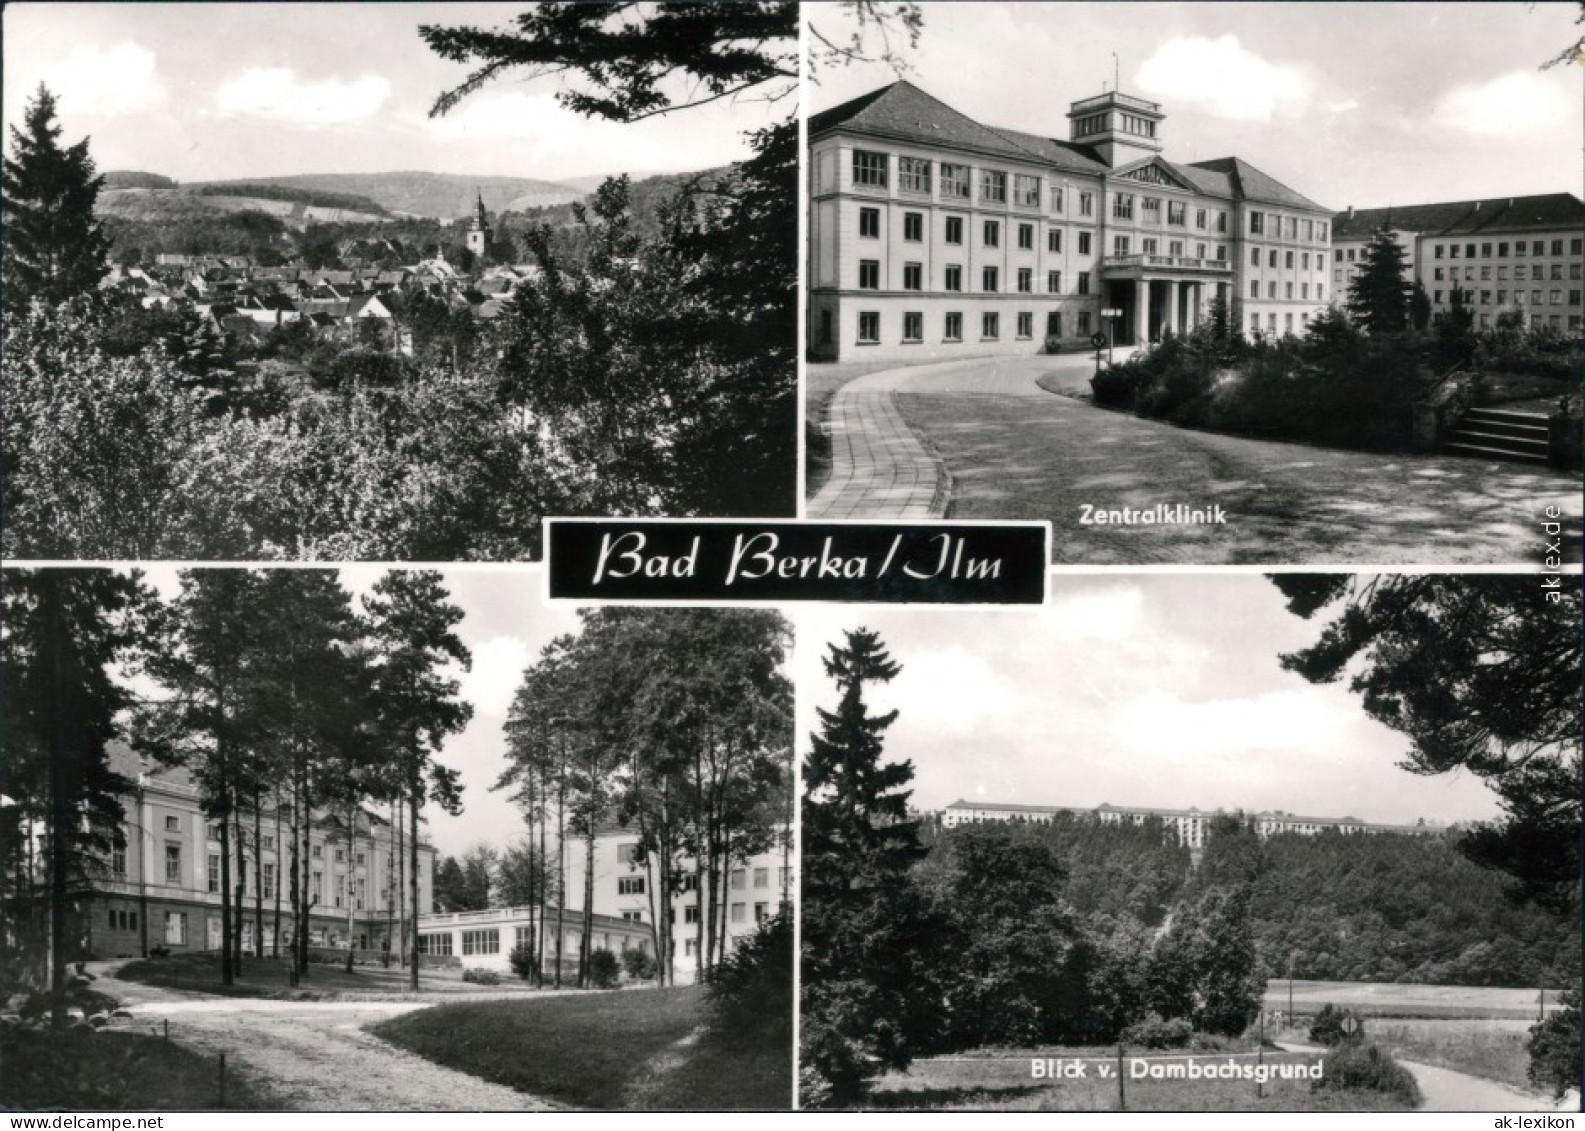 Ansichtskarte Bad Berka Zentralklinik, Blick Vom Dombachsgrund 1982 - Bad Berka